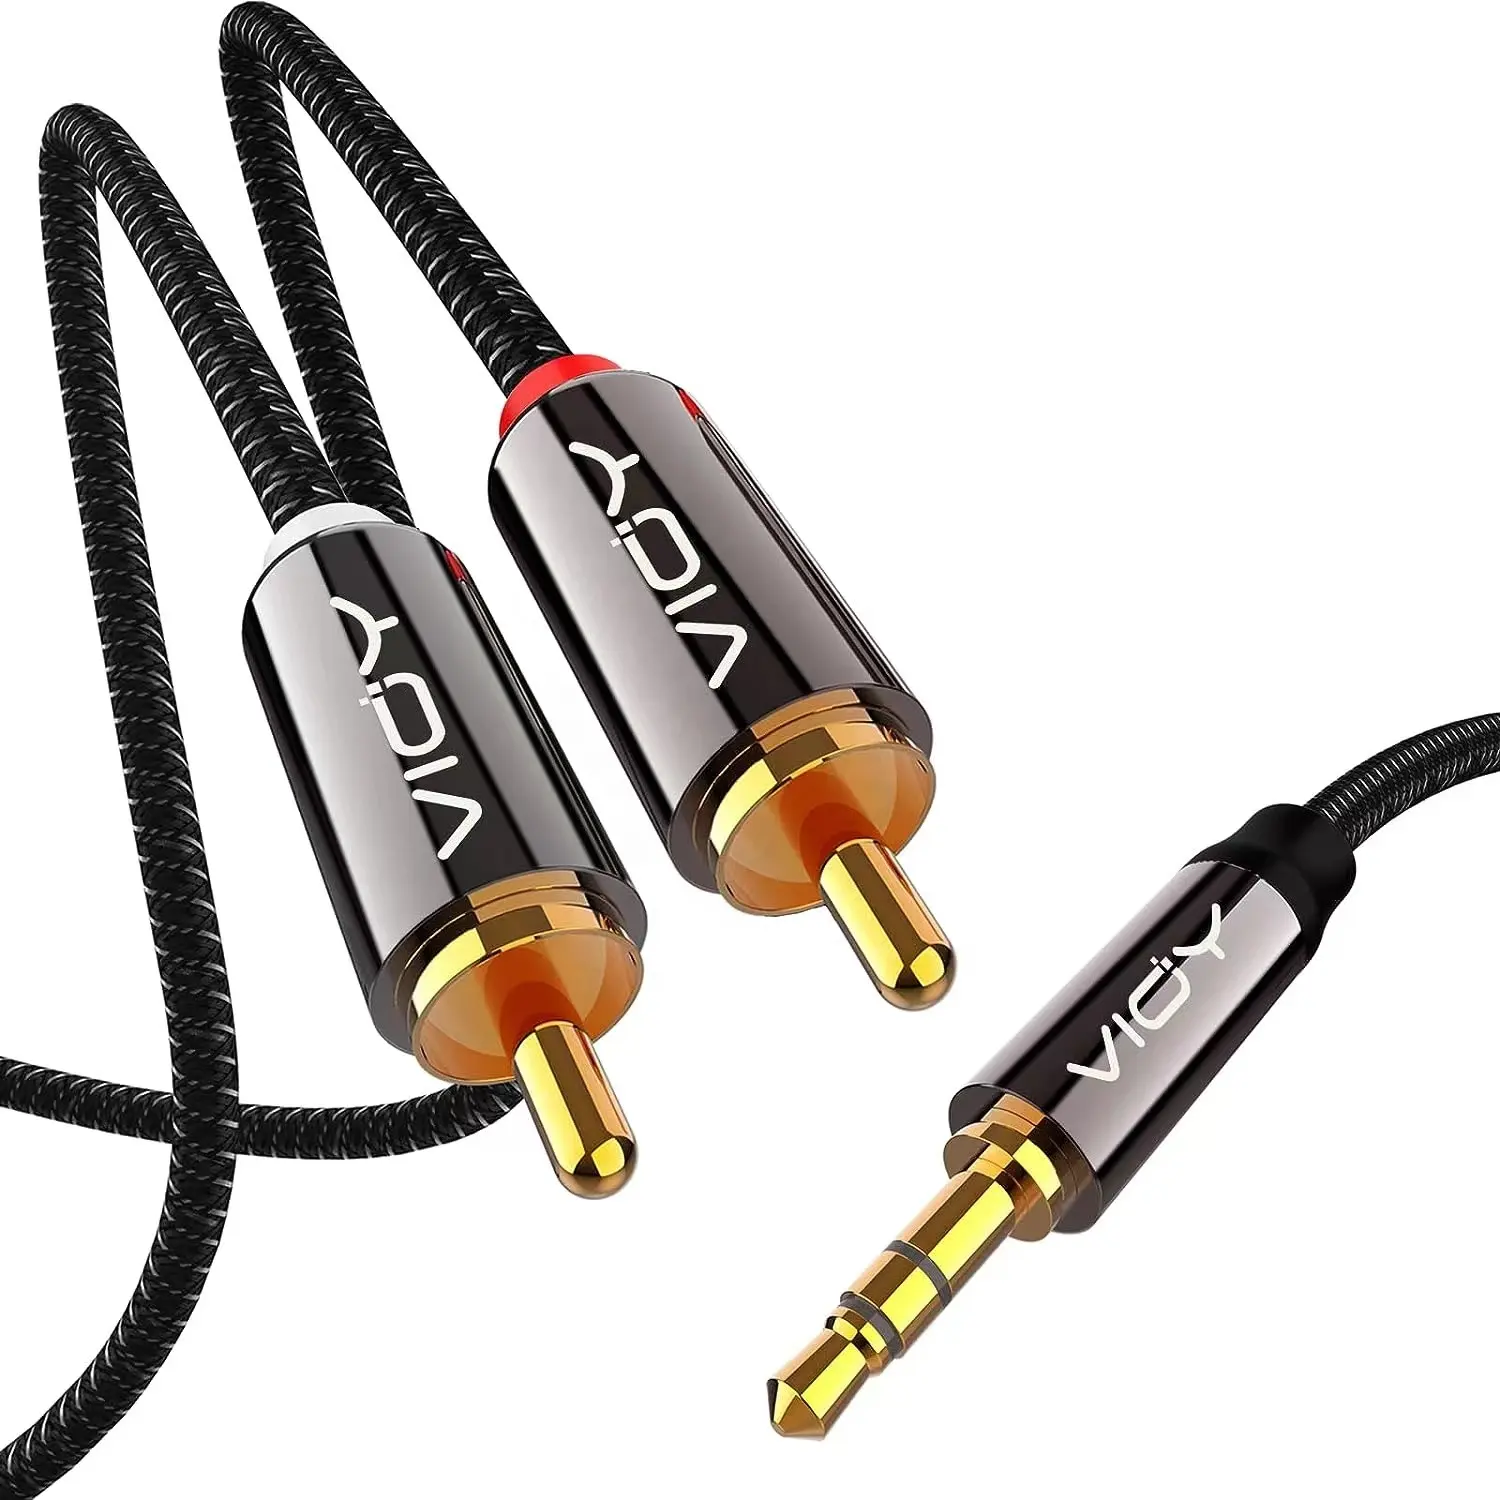 Kabel konektor Jack Audio 3.5mm ke 2 Rca 3.5mm ke kabel Speaker 2rca kabel Rca PS4 PS5 TV